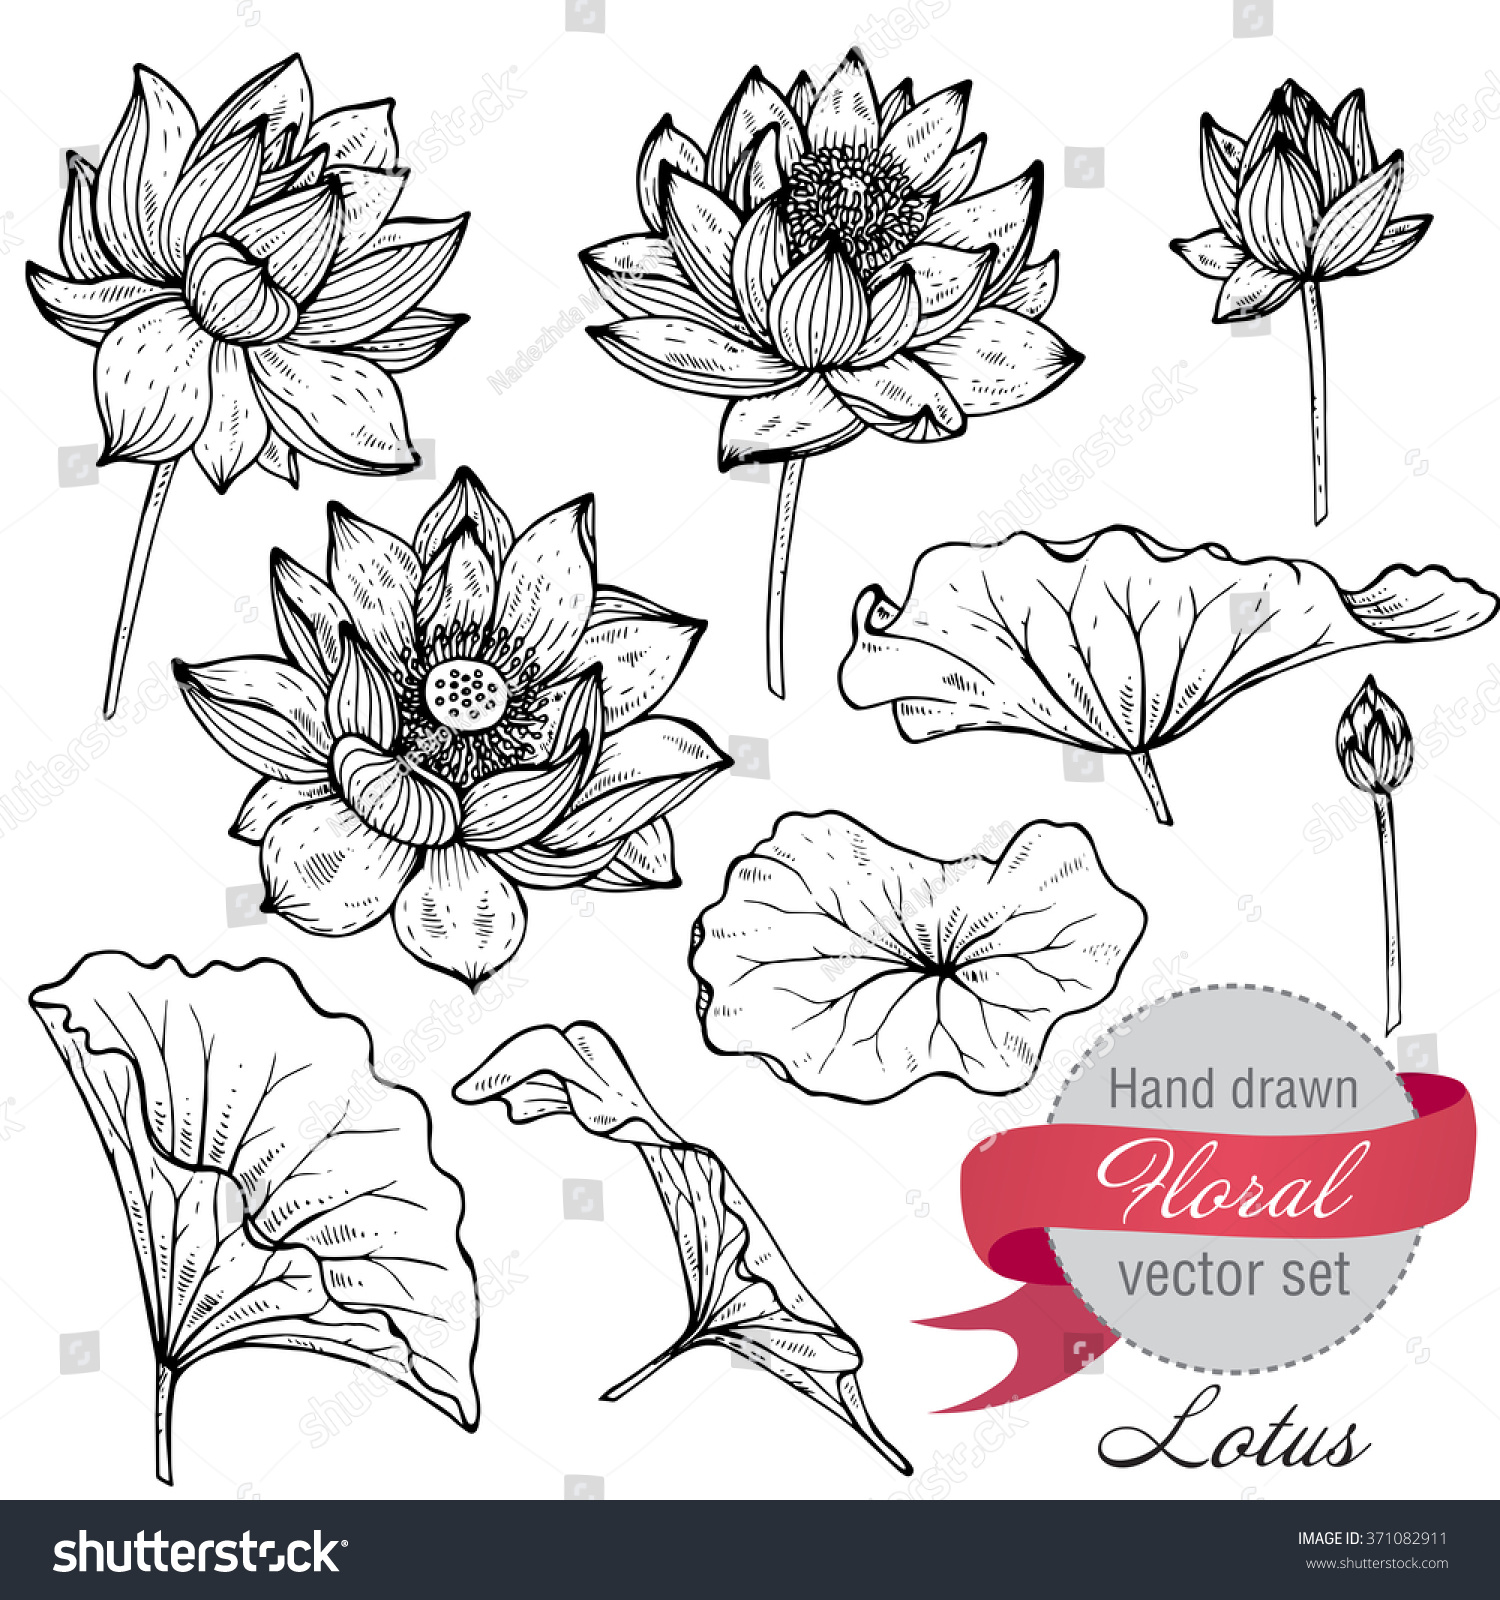 手描きの蓮の花と葉のベクター画像セット グラフィックスの白黒スタイルで花柄の植物コレクションをスケッチ のベクター画像素材 ロイヤリティフリー